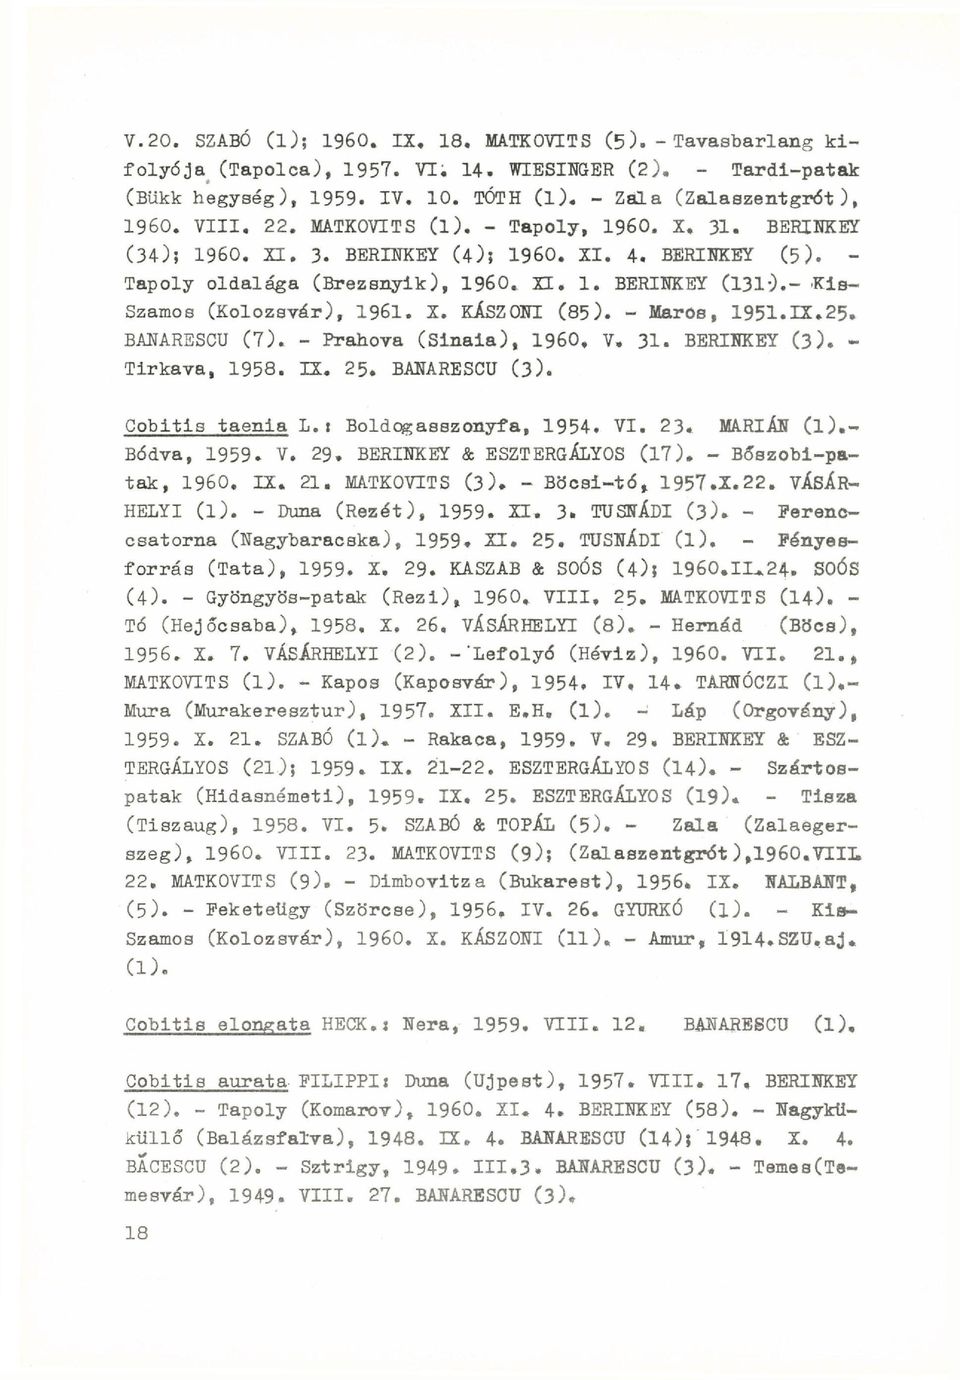 - 'Kis- Szamos (Kolozsvár), 1961. X. KÁSZONI (85). - Maros, 1951.IX.25. BANARESCU ( 7). - Prahova (Sinaia), I960. V, 31. BERINKEY (3). - Tirkava, 1958. IX. 25. BANARESCU (3). Cobitis taenia L.